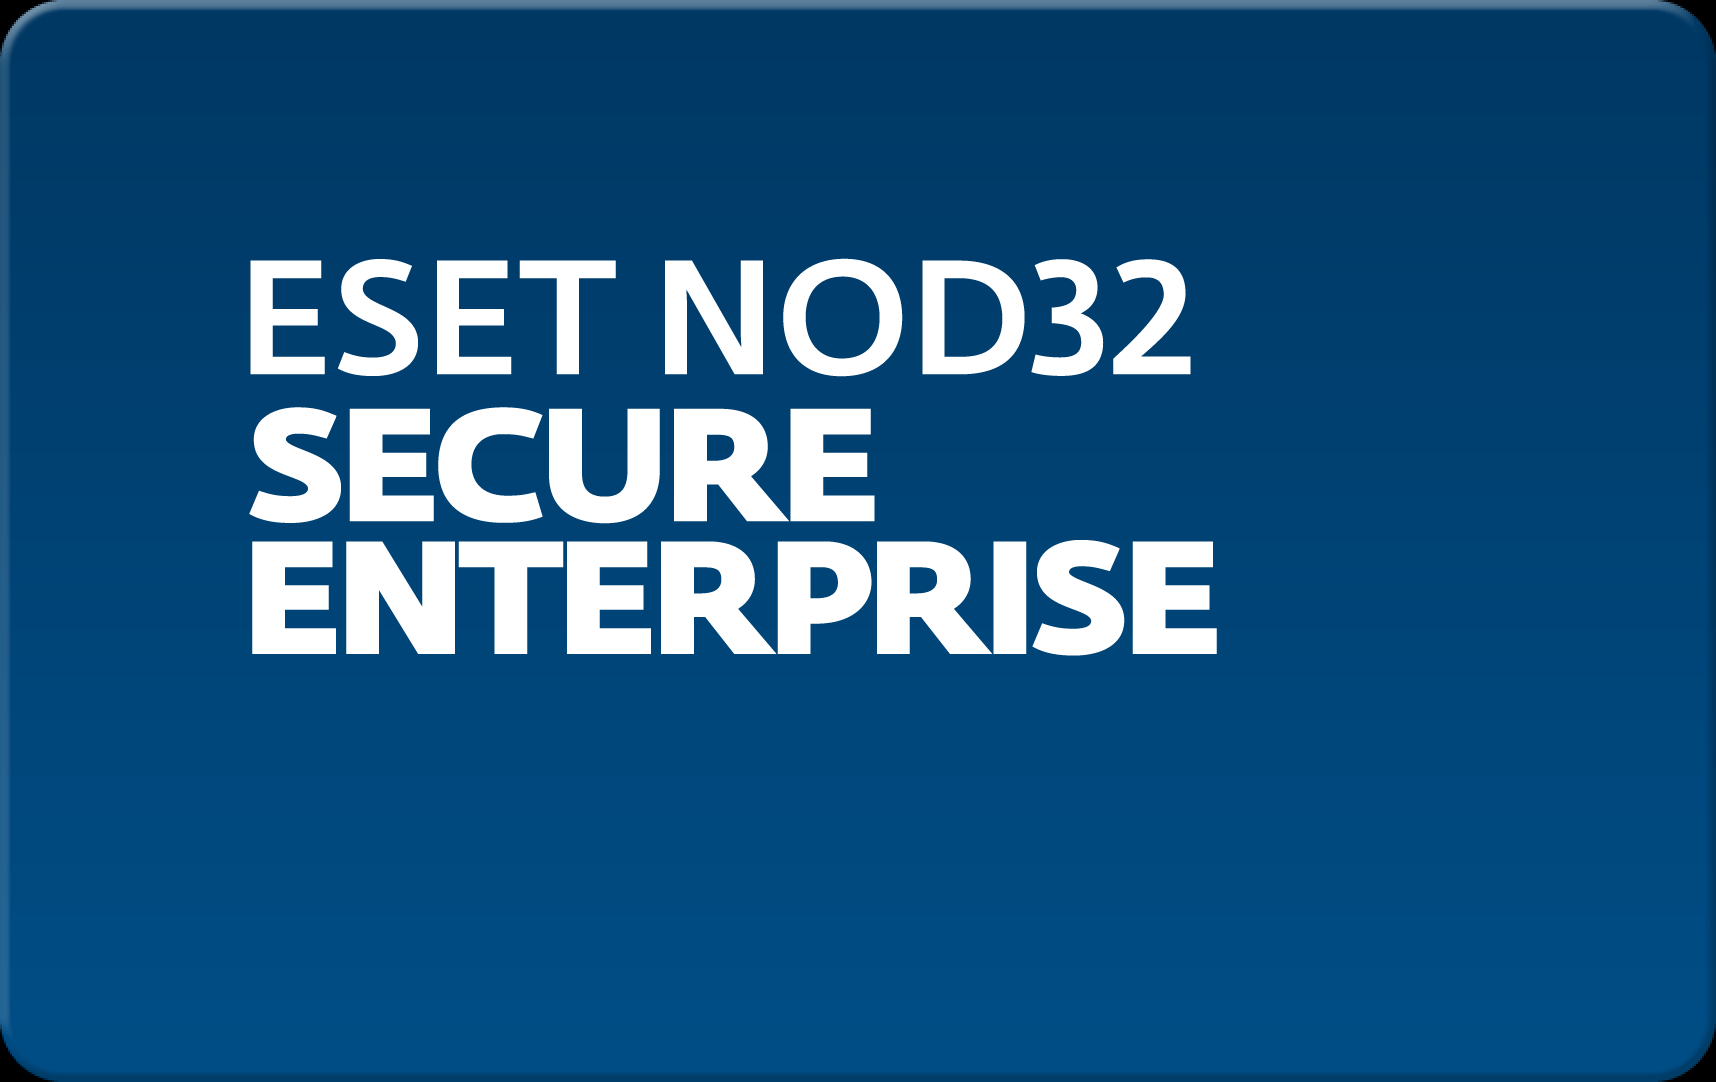        Eset NOD32 Secure Enterprise  146 